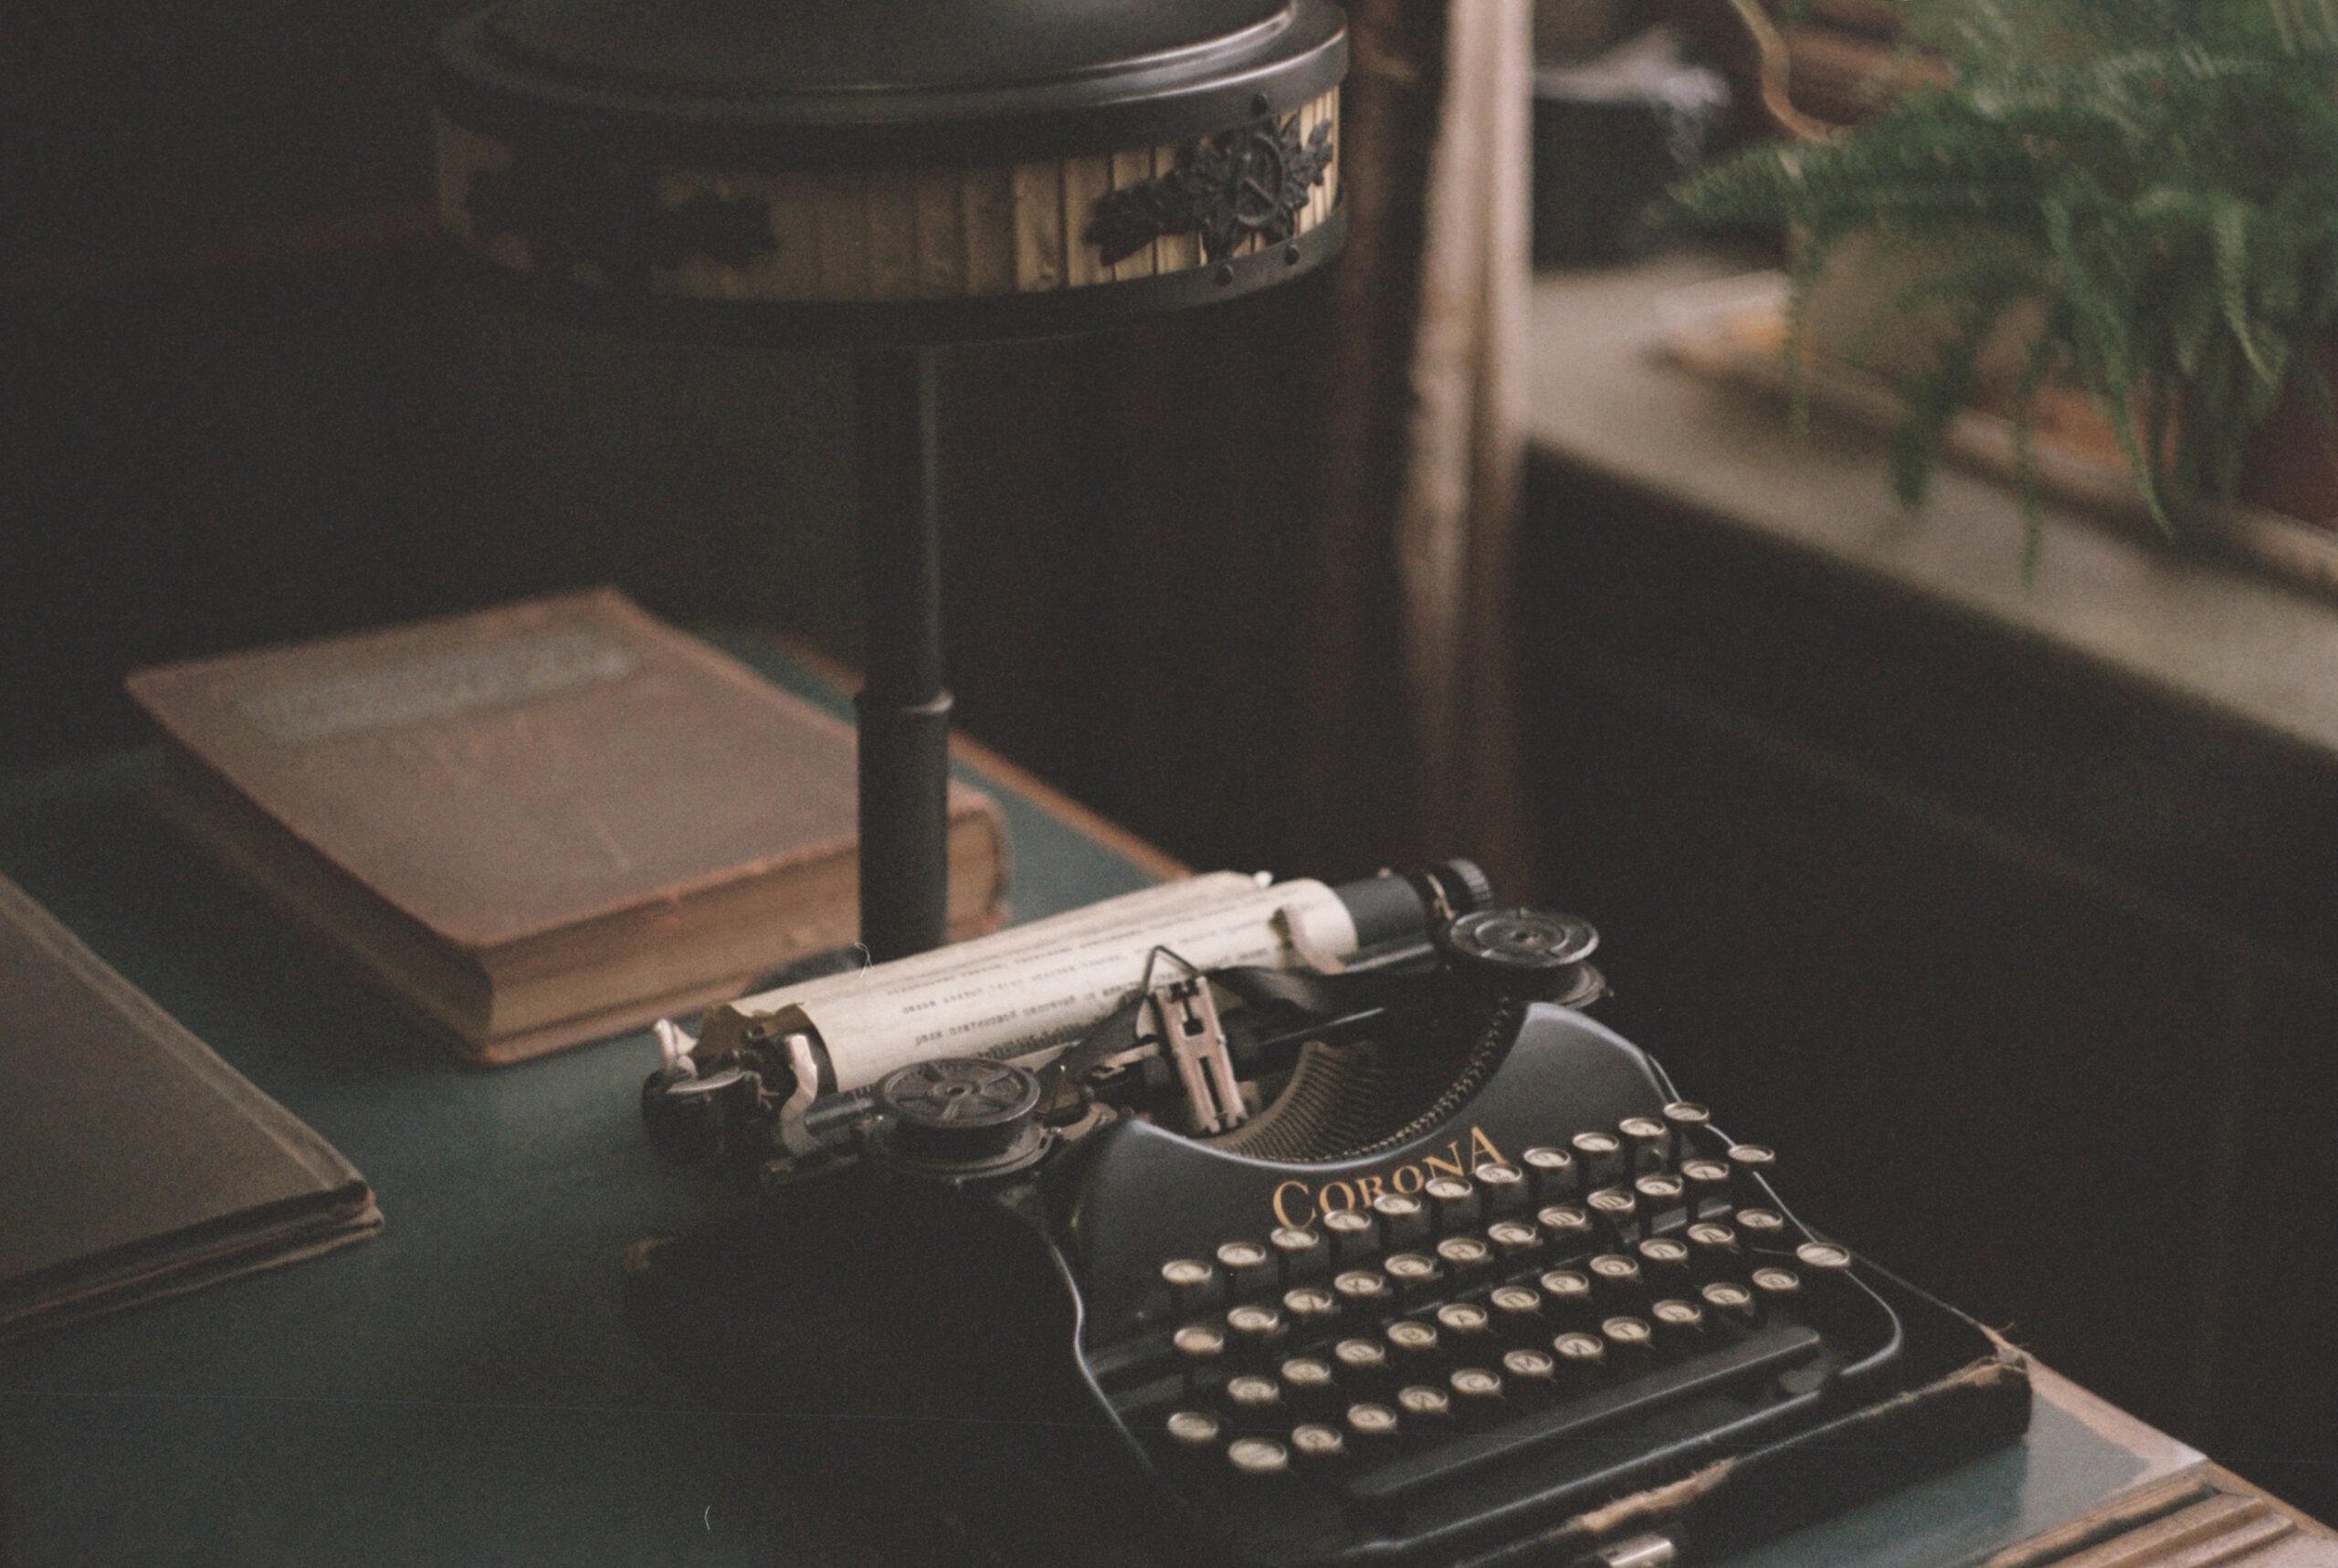 A typewriter on an old desk. Photo by Daria Kraplak on Unsplash.